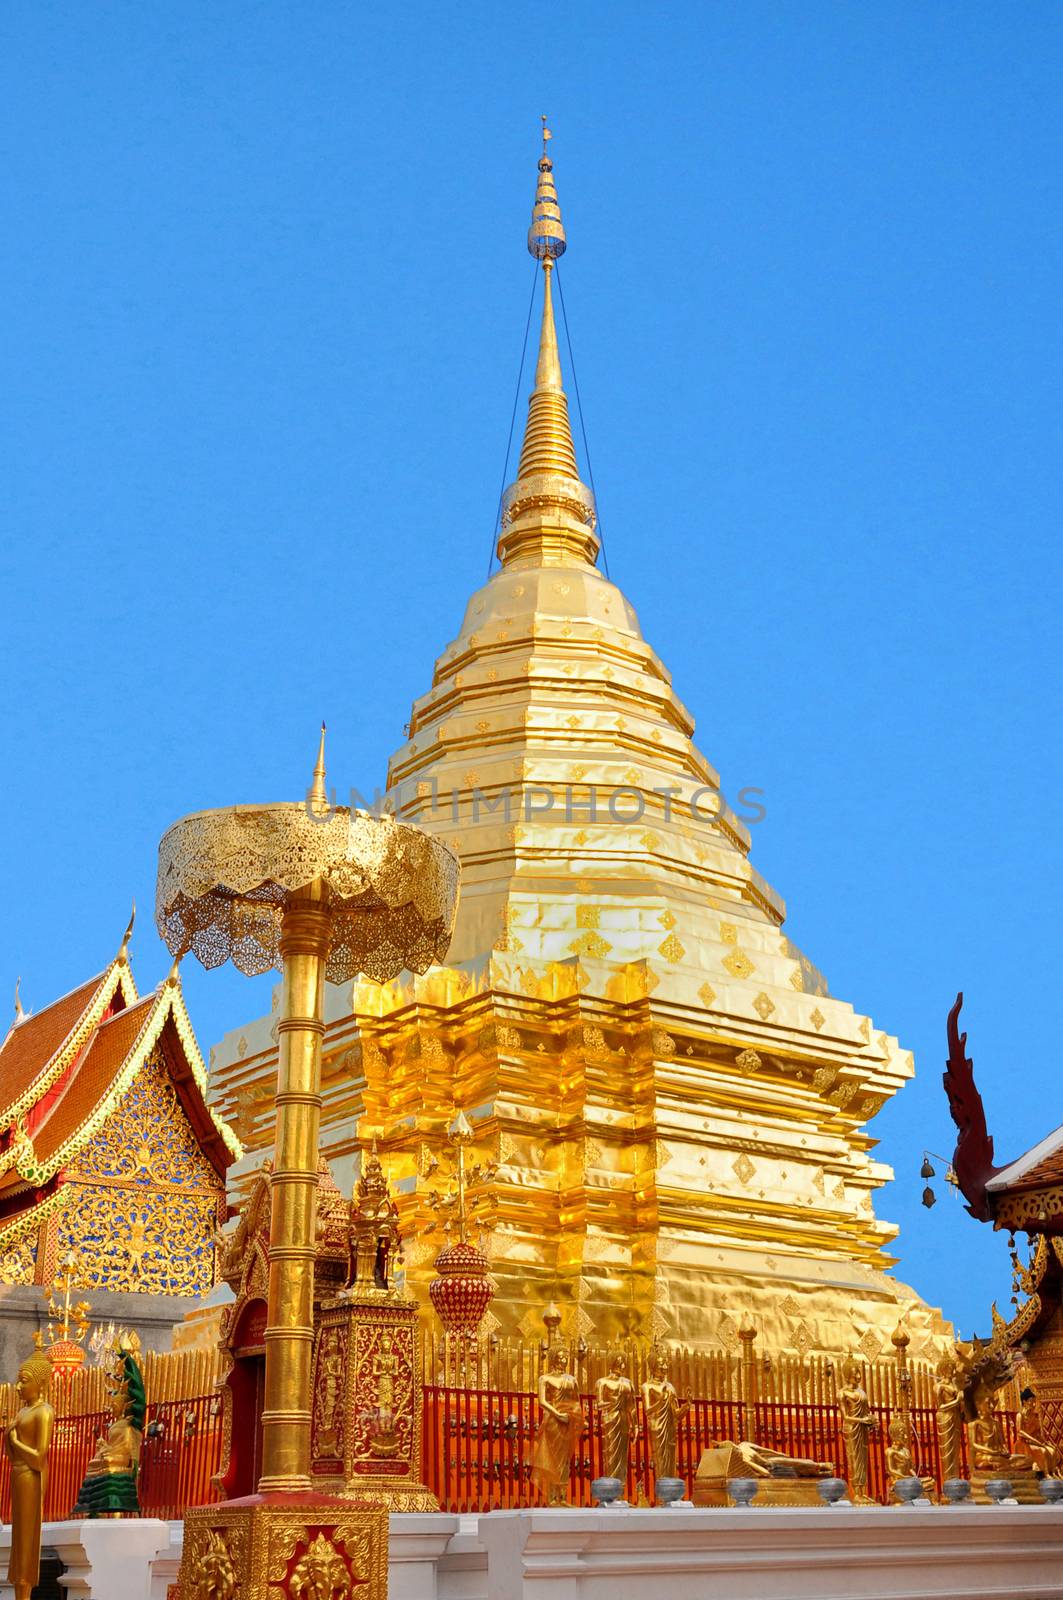 Pagoda at Wat Phra That Doi Suthep, Chiang Mai, Thailand.